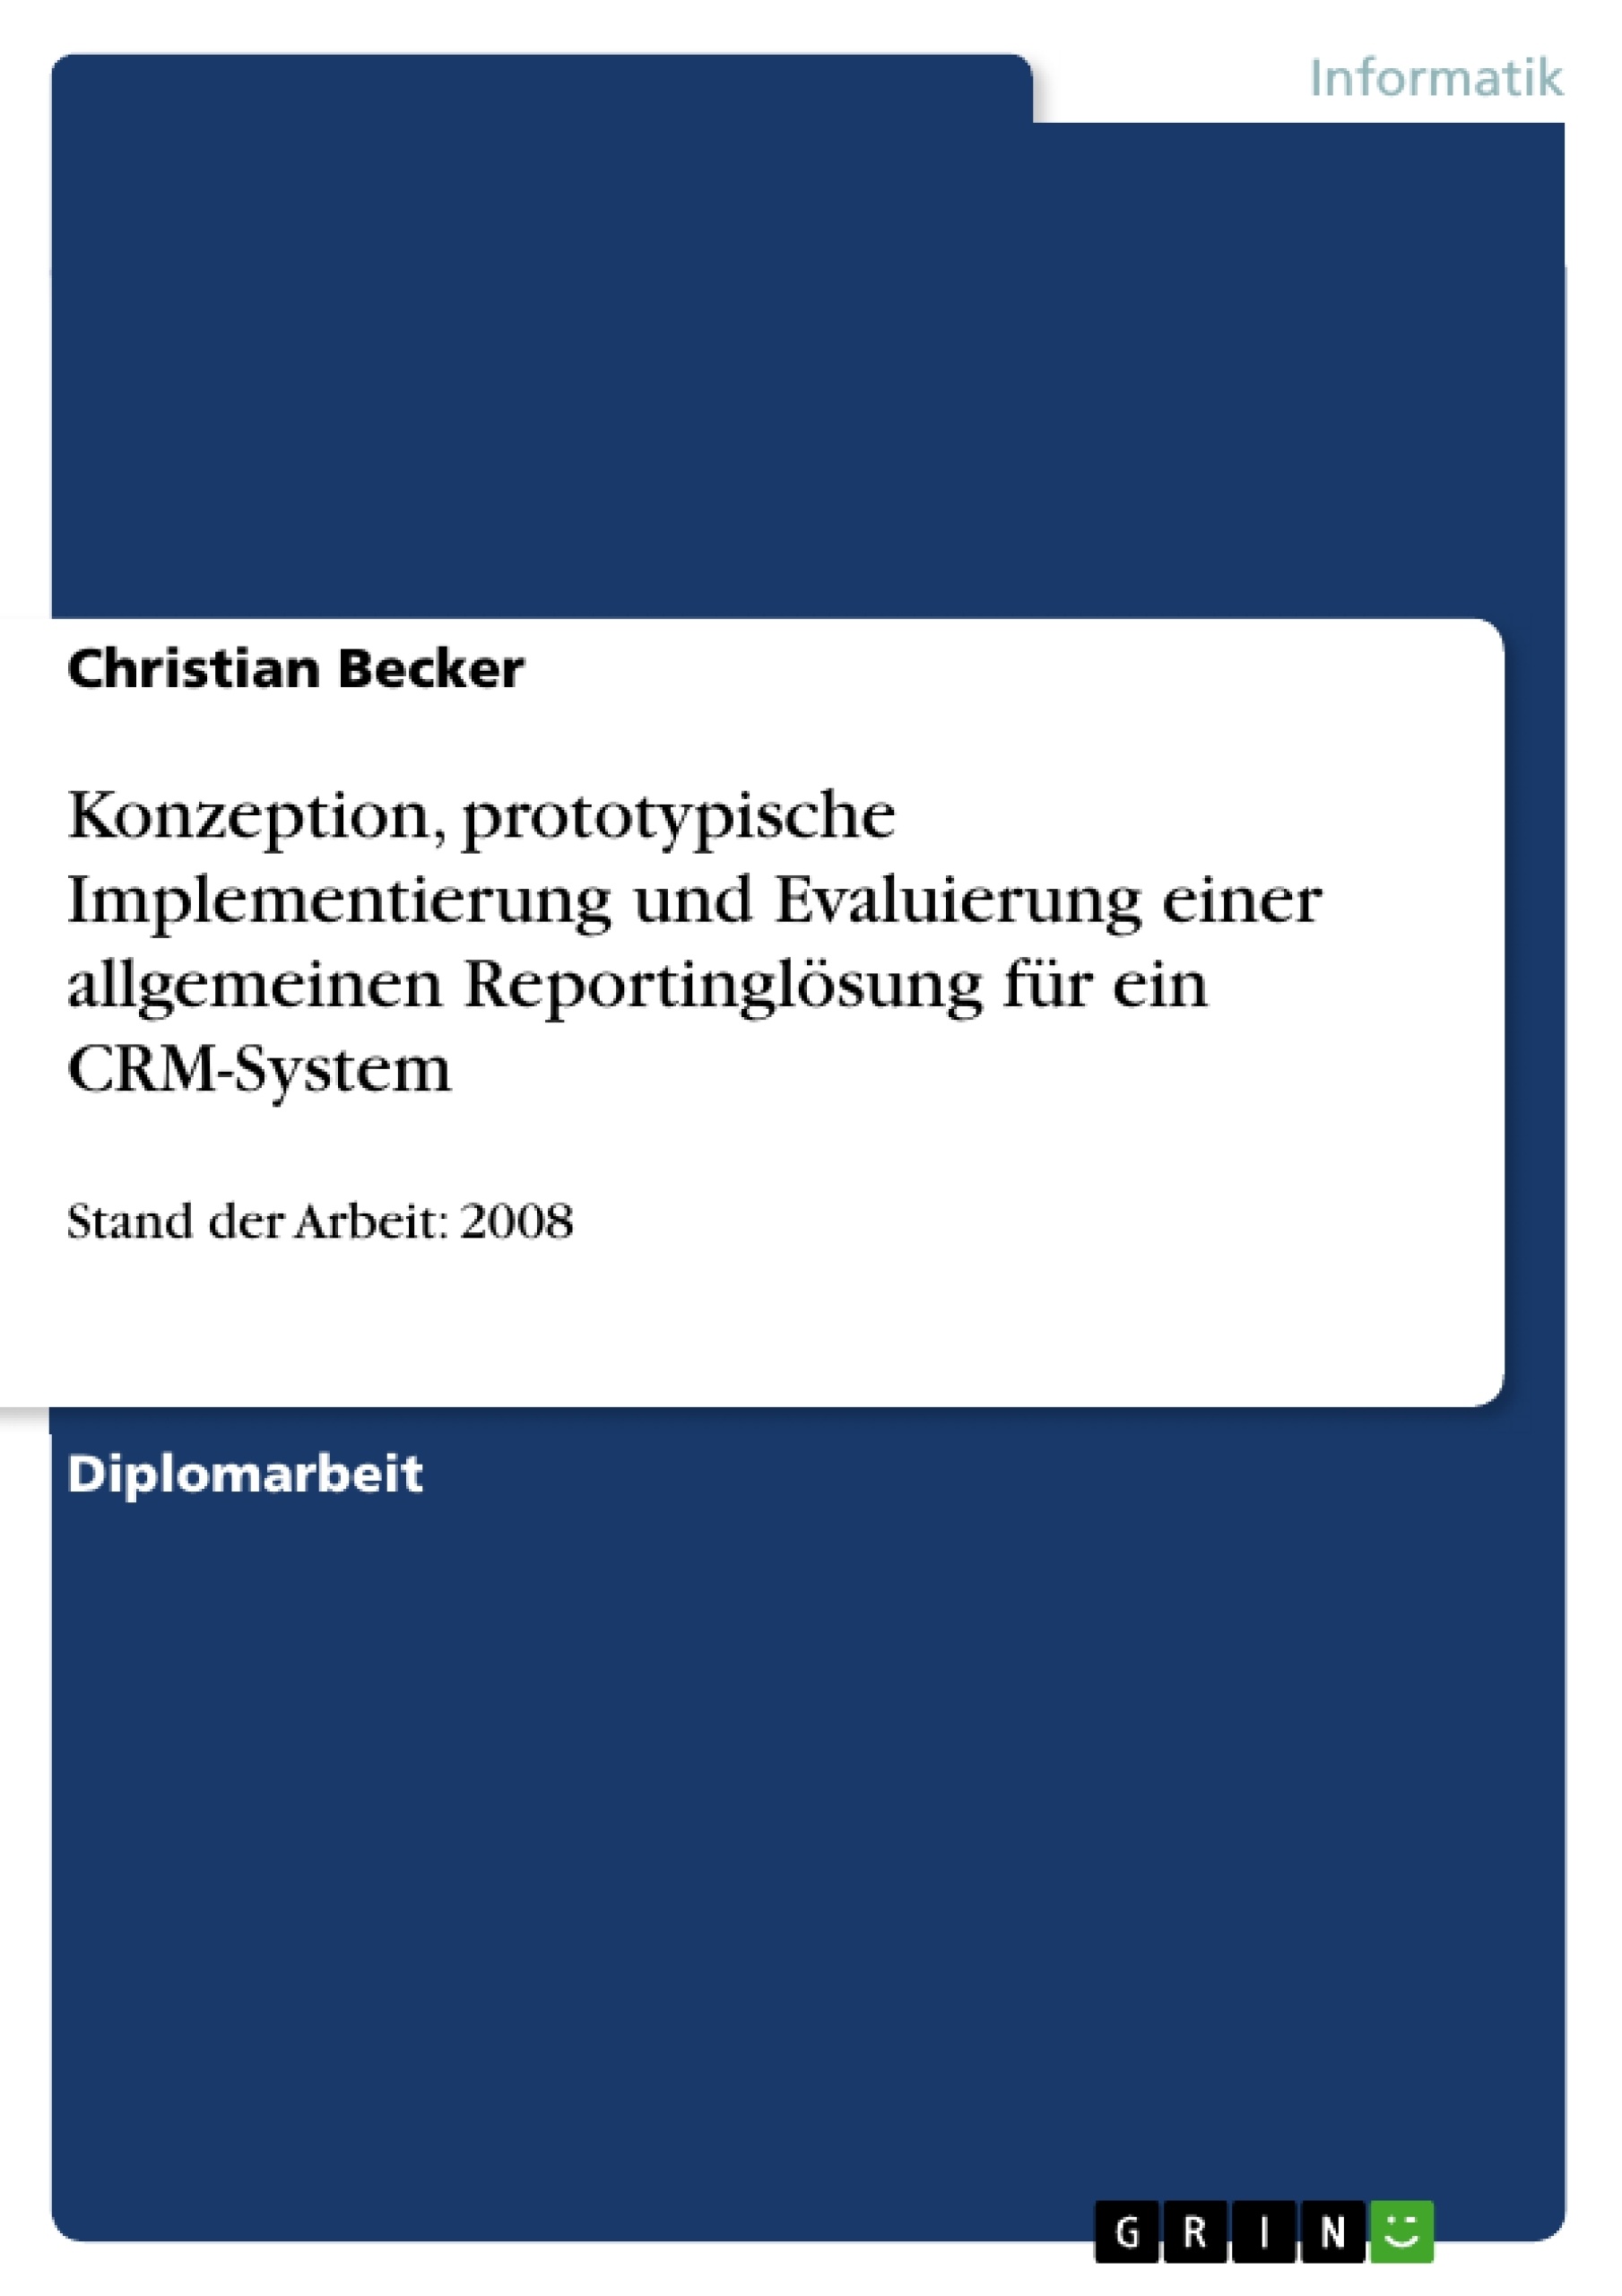 Título: Konzeption, prototypische Implementierung und Evaluierung einer allgemeinen Reportinglösung für ein CRM-System